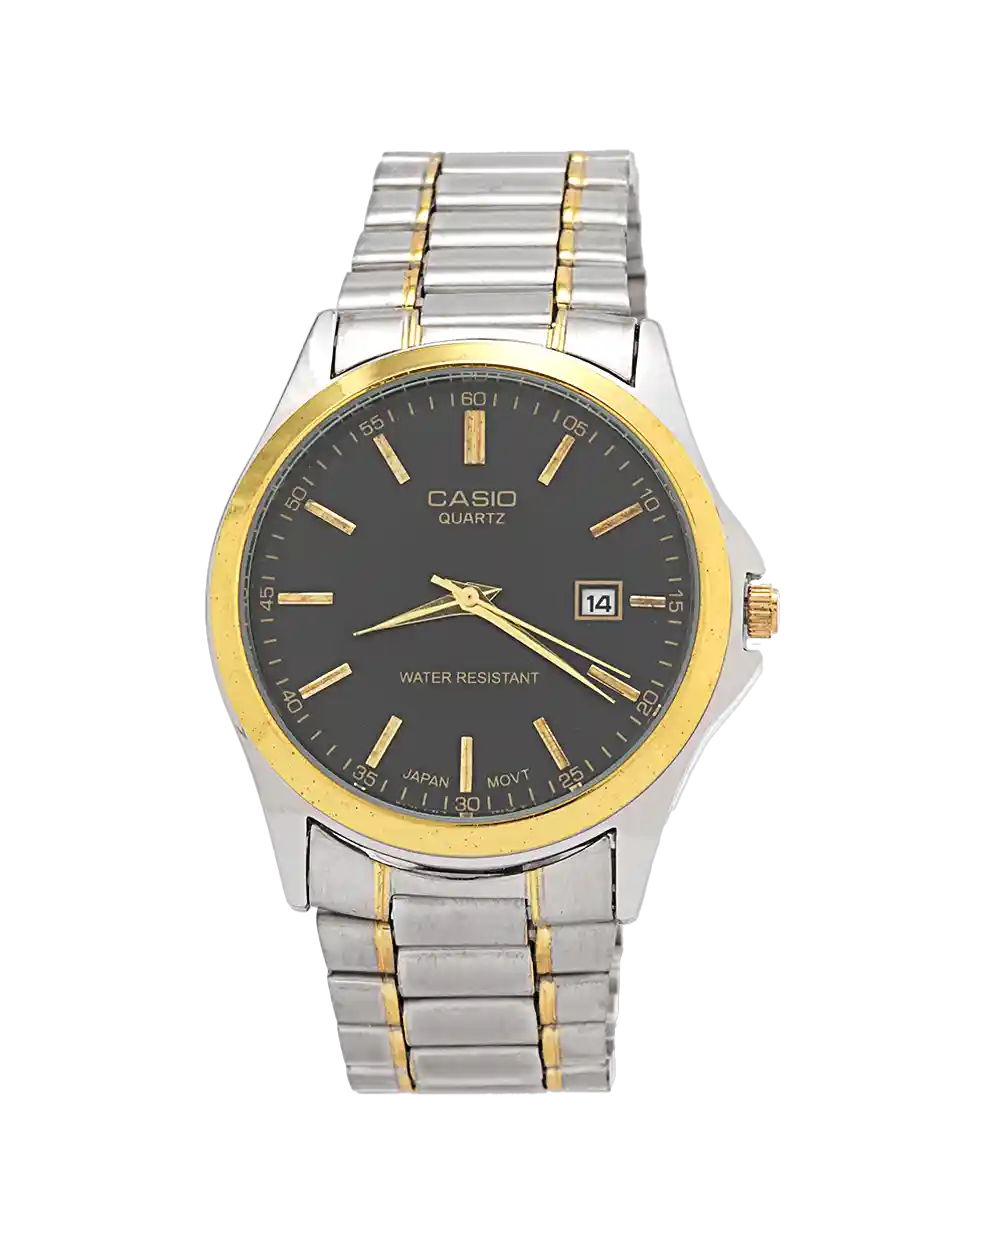 خرید ساعت مچی مردانه کاسیو CASIO مدل 1939 رنگ نقره ای طلایی با صفحه مشکی بهترین قیمت به همراه ارسال رایگان به سراسر ایران درب منزل